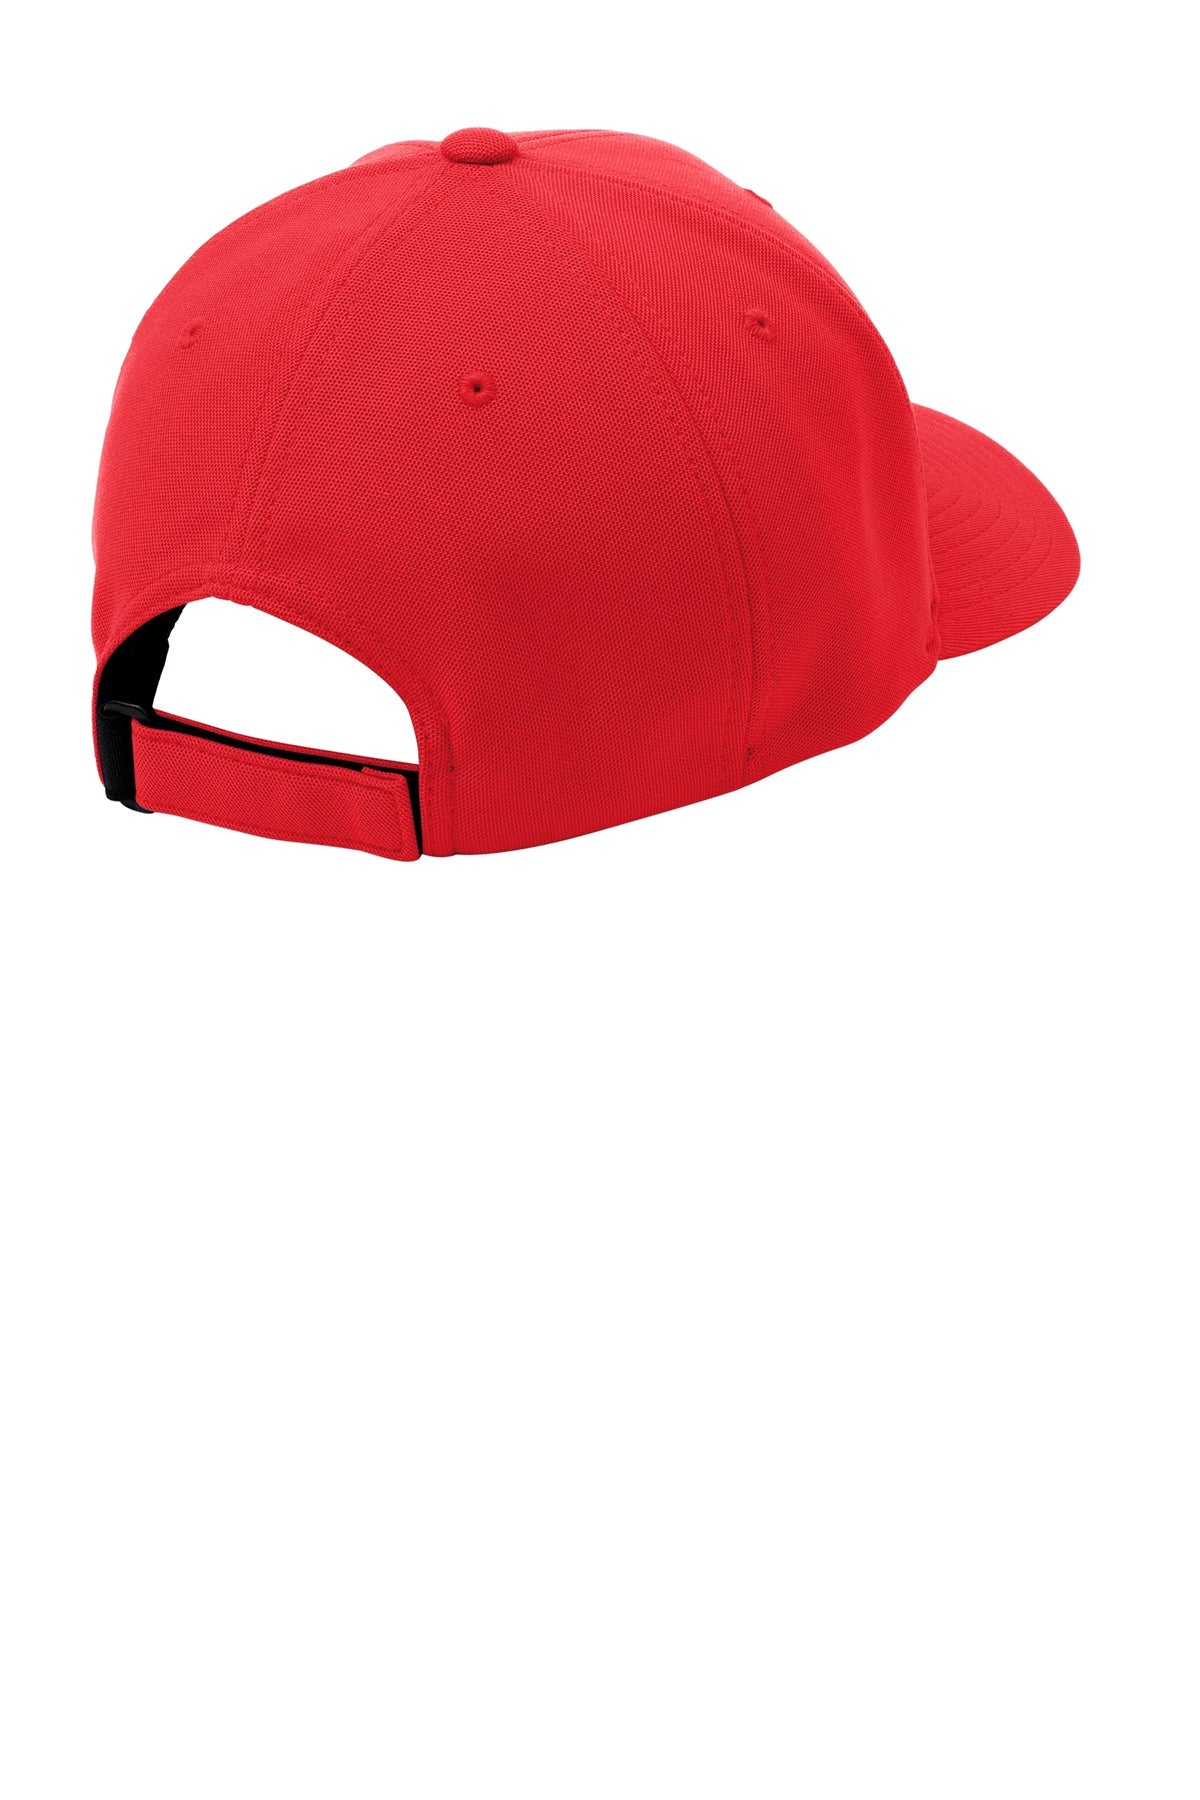 Port Authority Flexfit Custom One Ten Cool & Dry Mini Pique Caps, Red